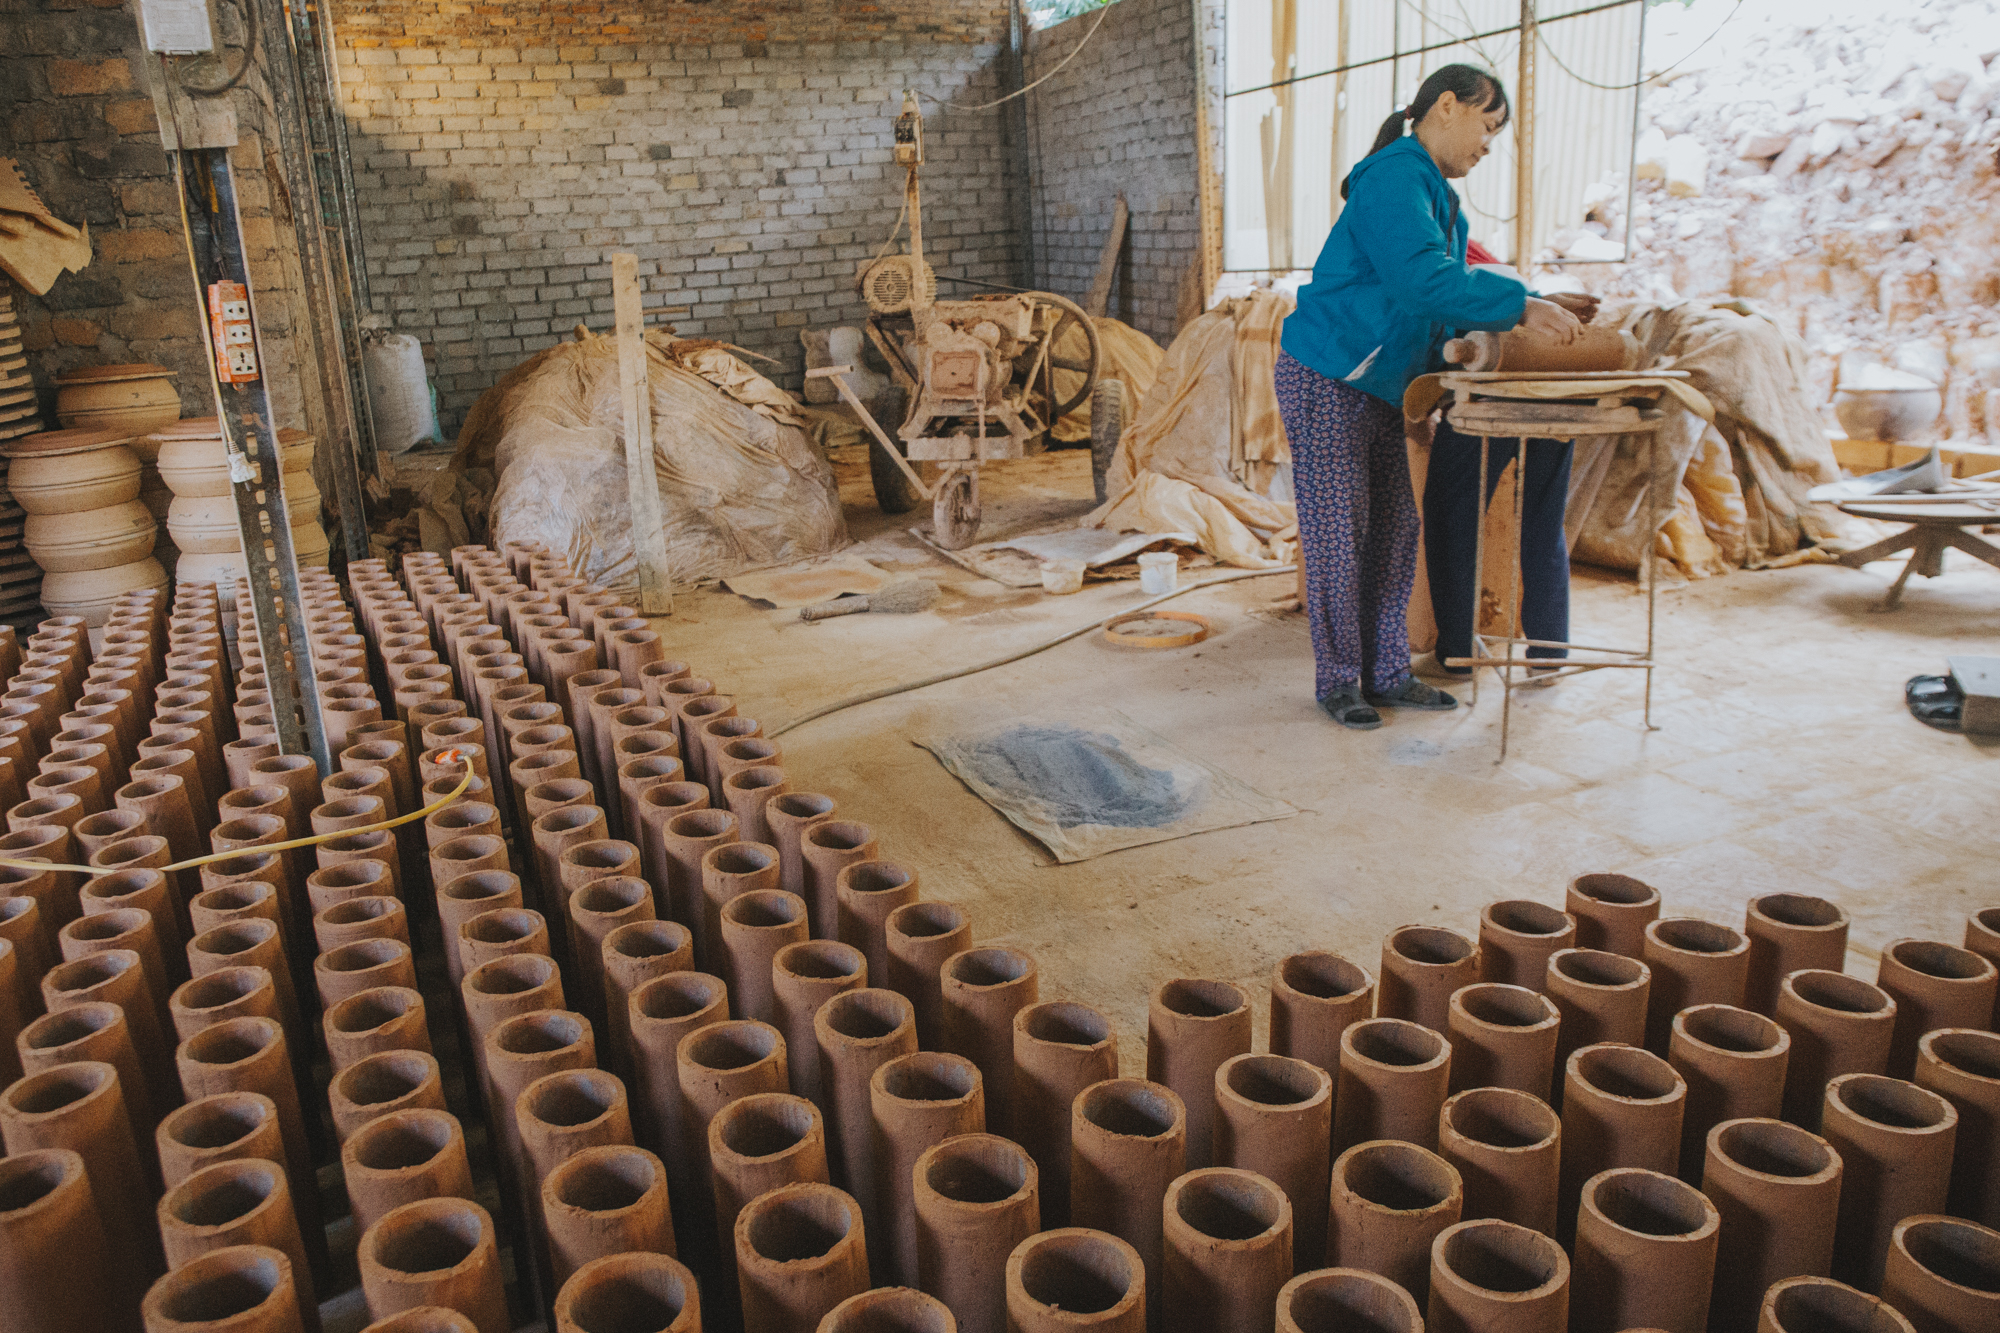 Làng gốm thủ công hơn 700 năm tuổi ở Bắc Ninh tất bật ngày giáp Tết - Ảnh 4.